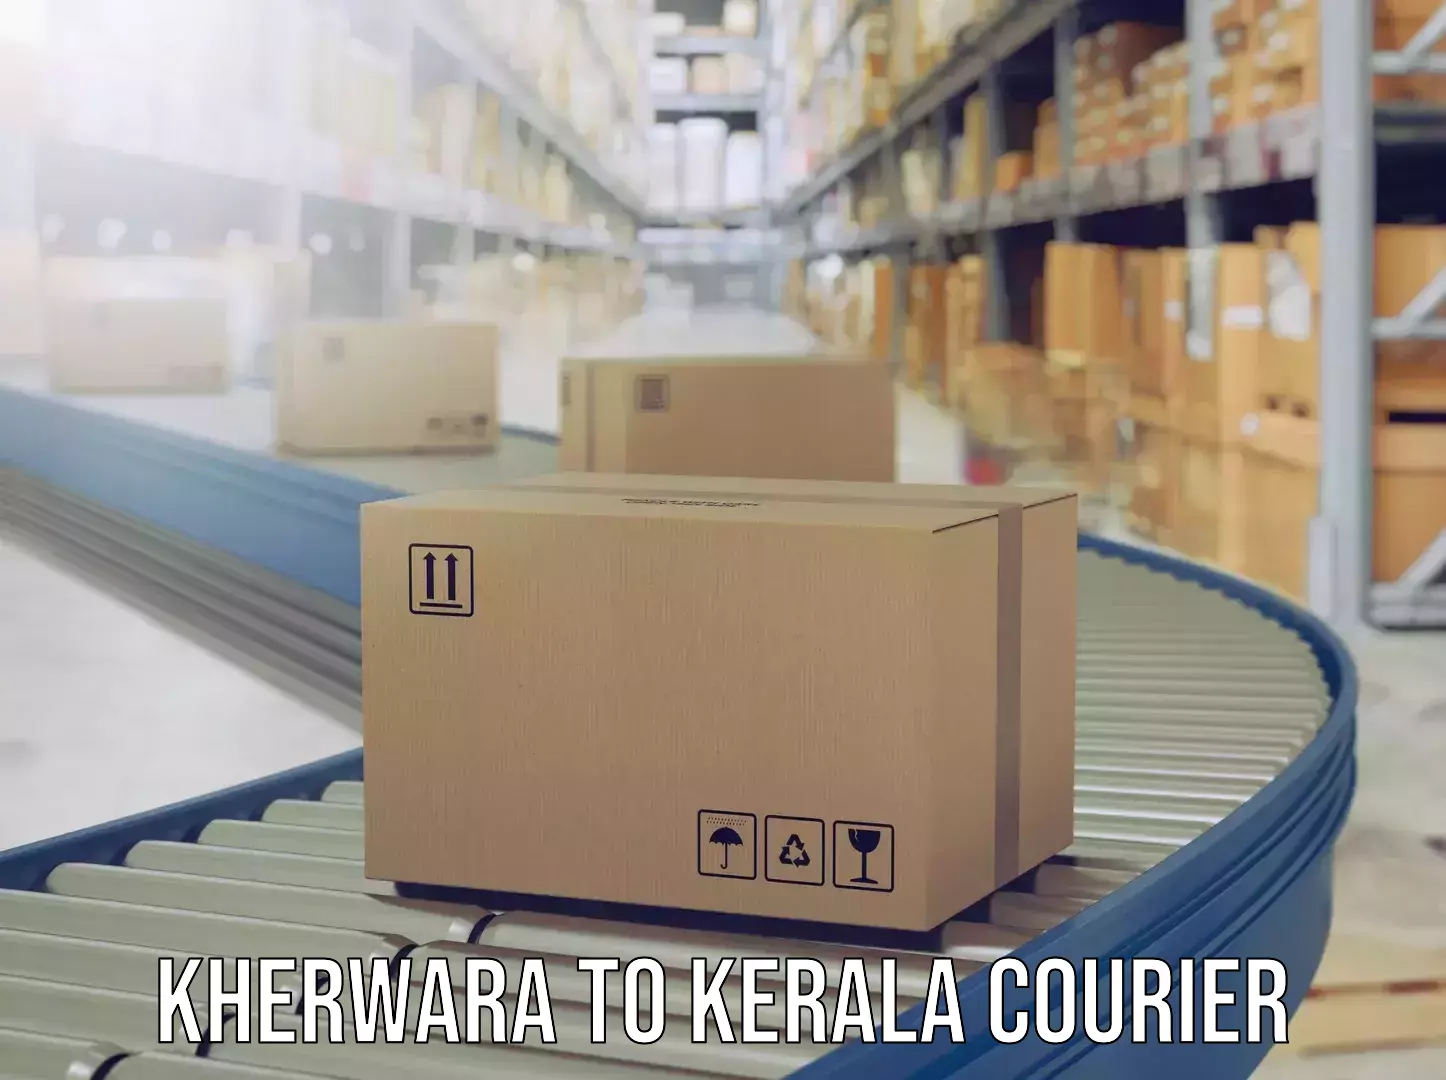 Luggage delivery app Kherwara to Palai